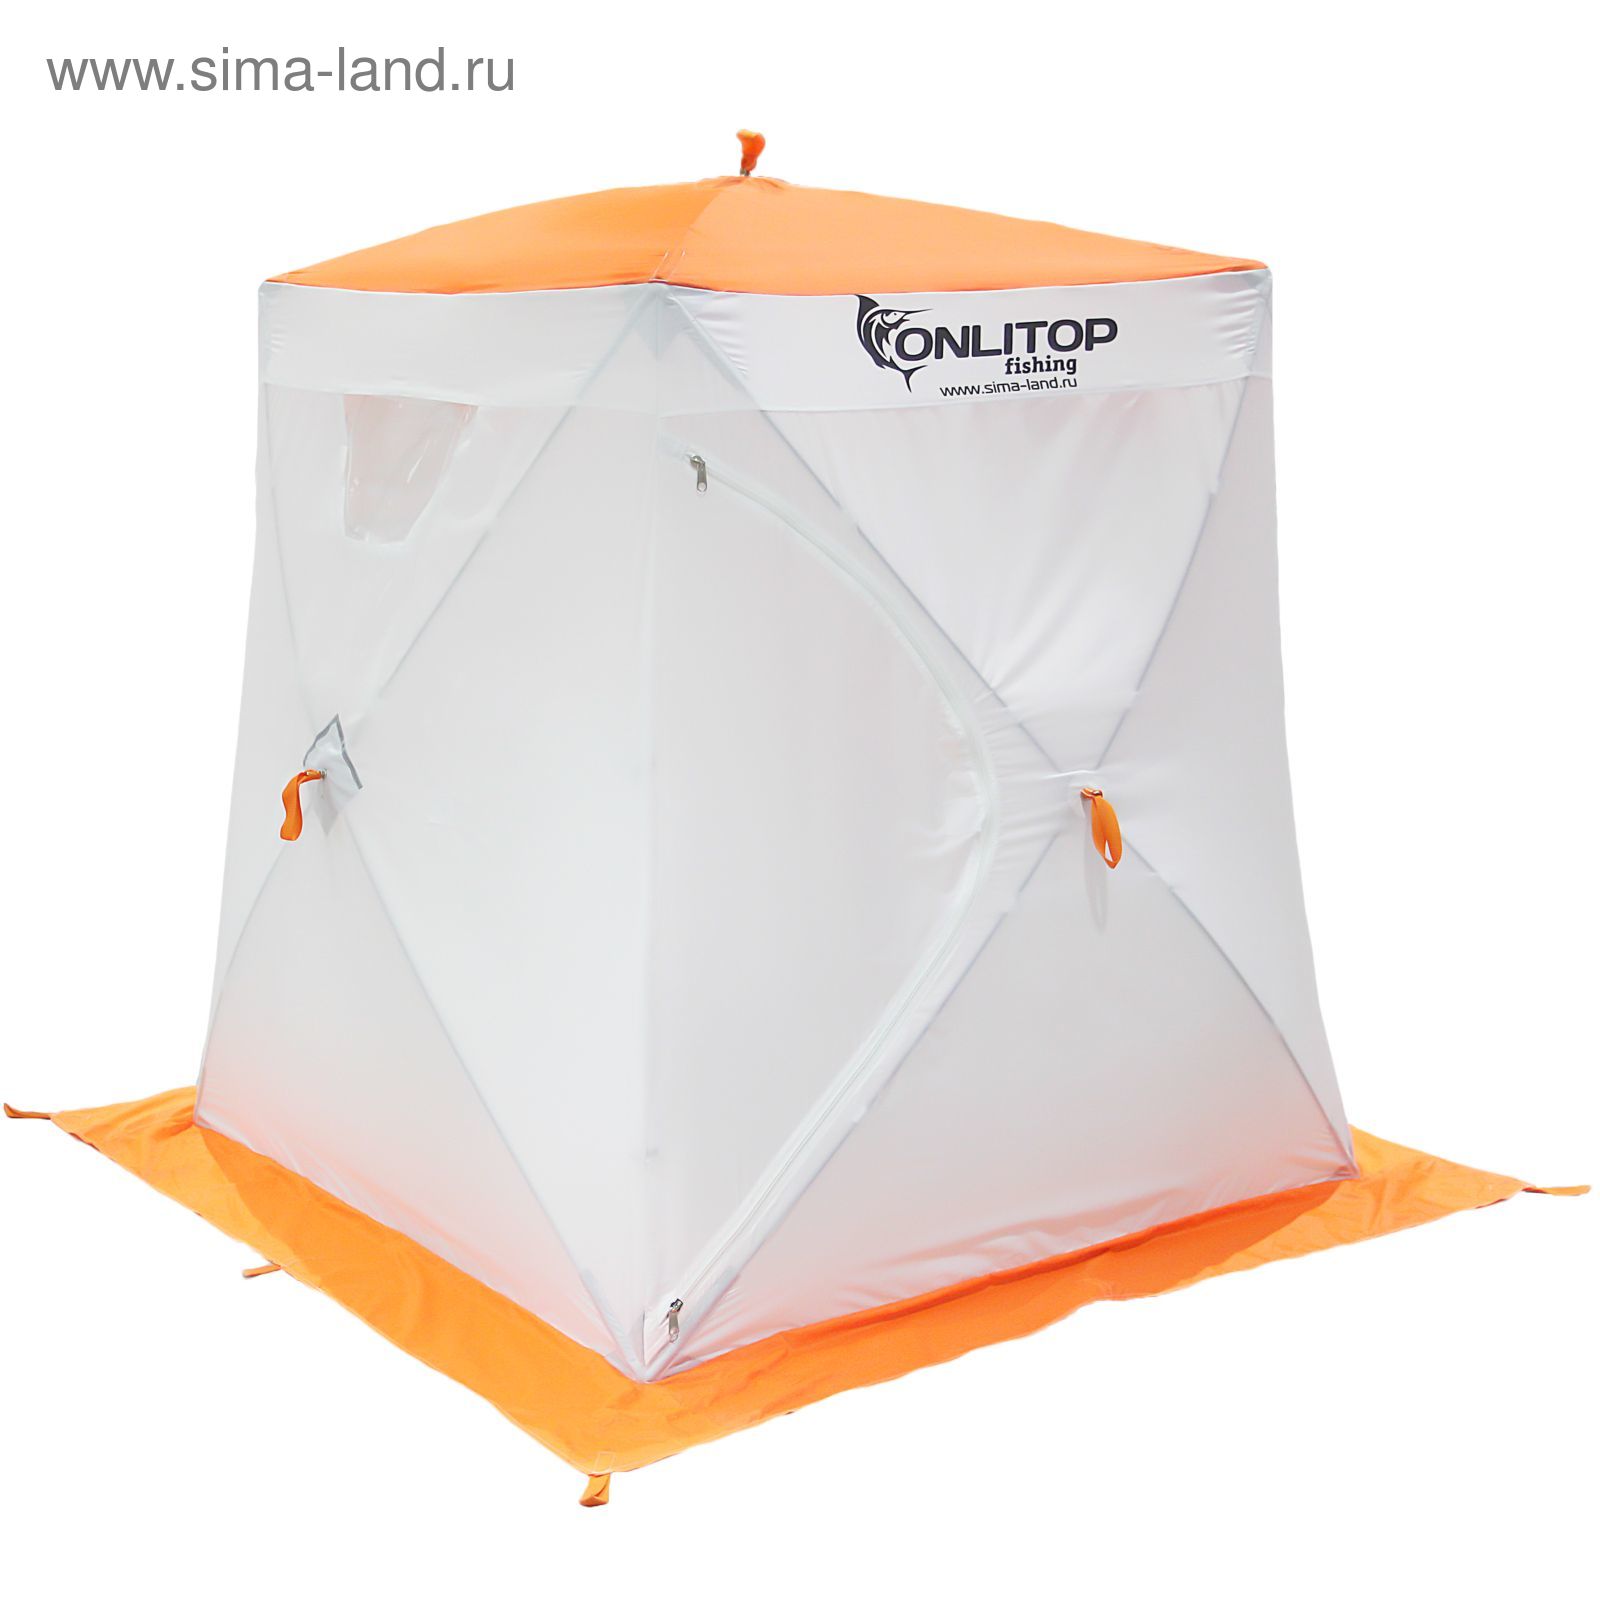 Палатка "Призма Люкс" 150, 2-слойная, цвет бело-оранжевый